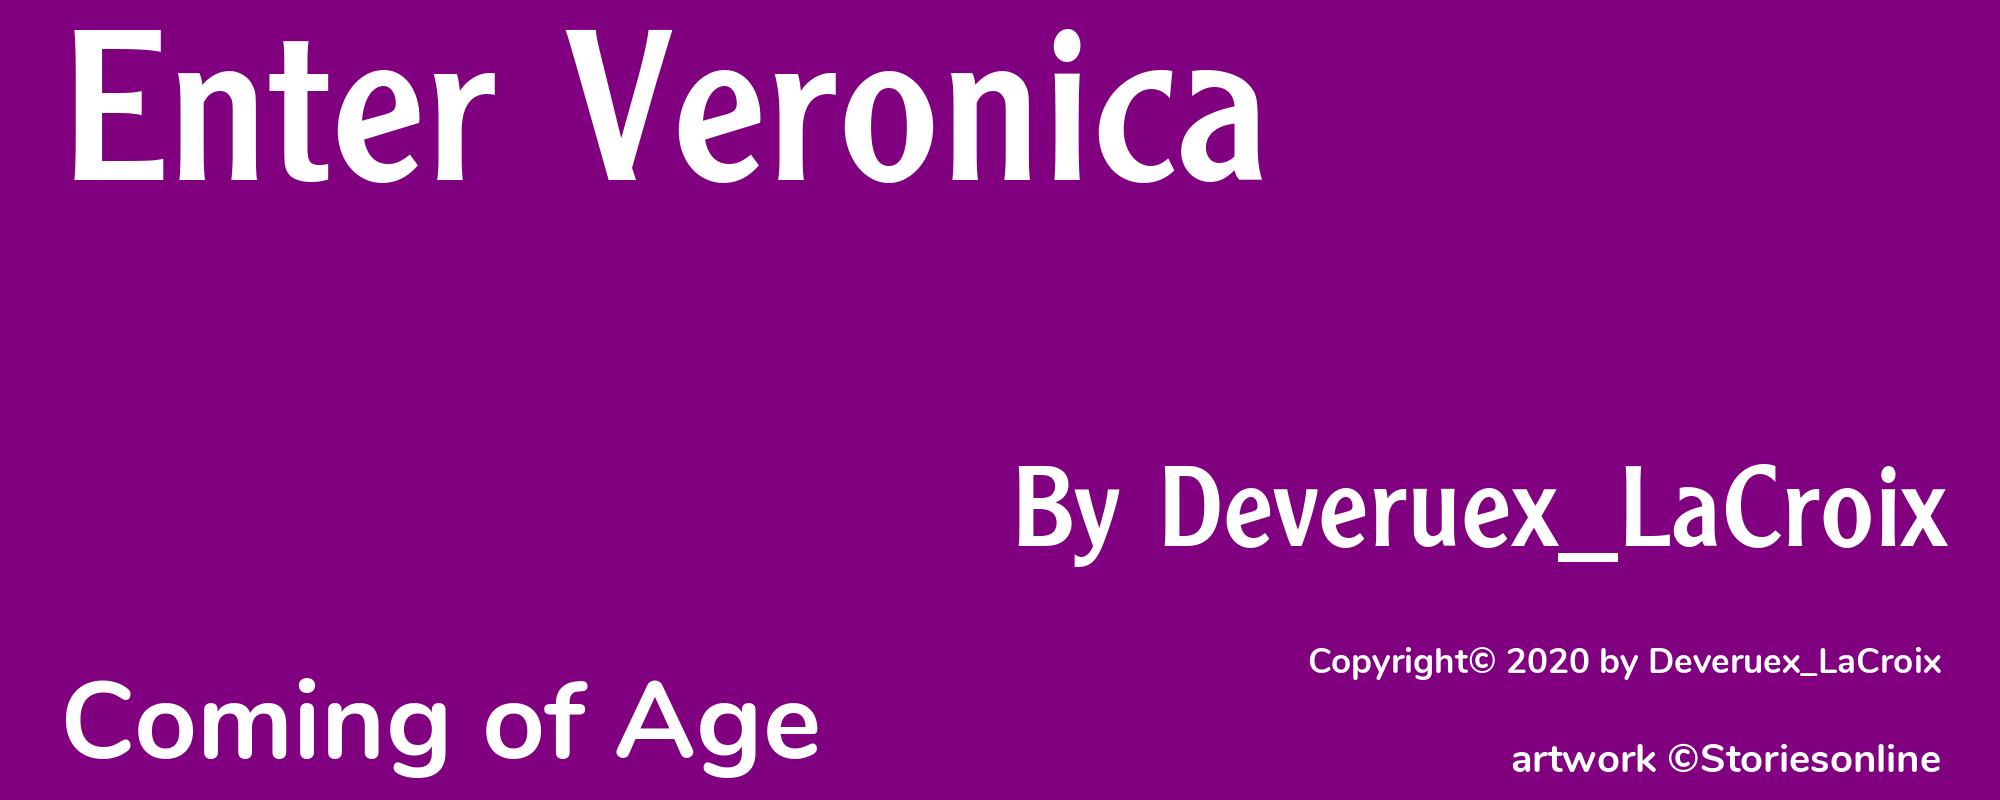 Enter Veronica - Cover